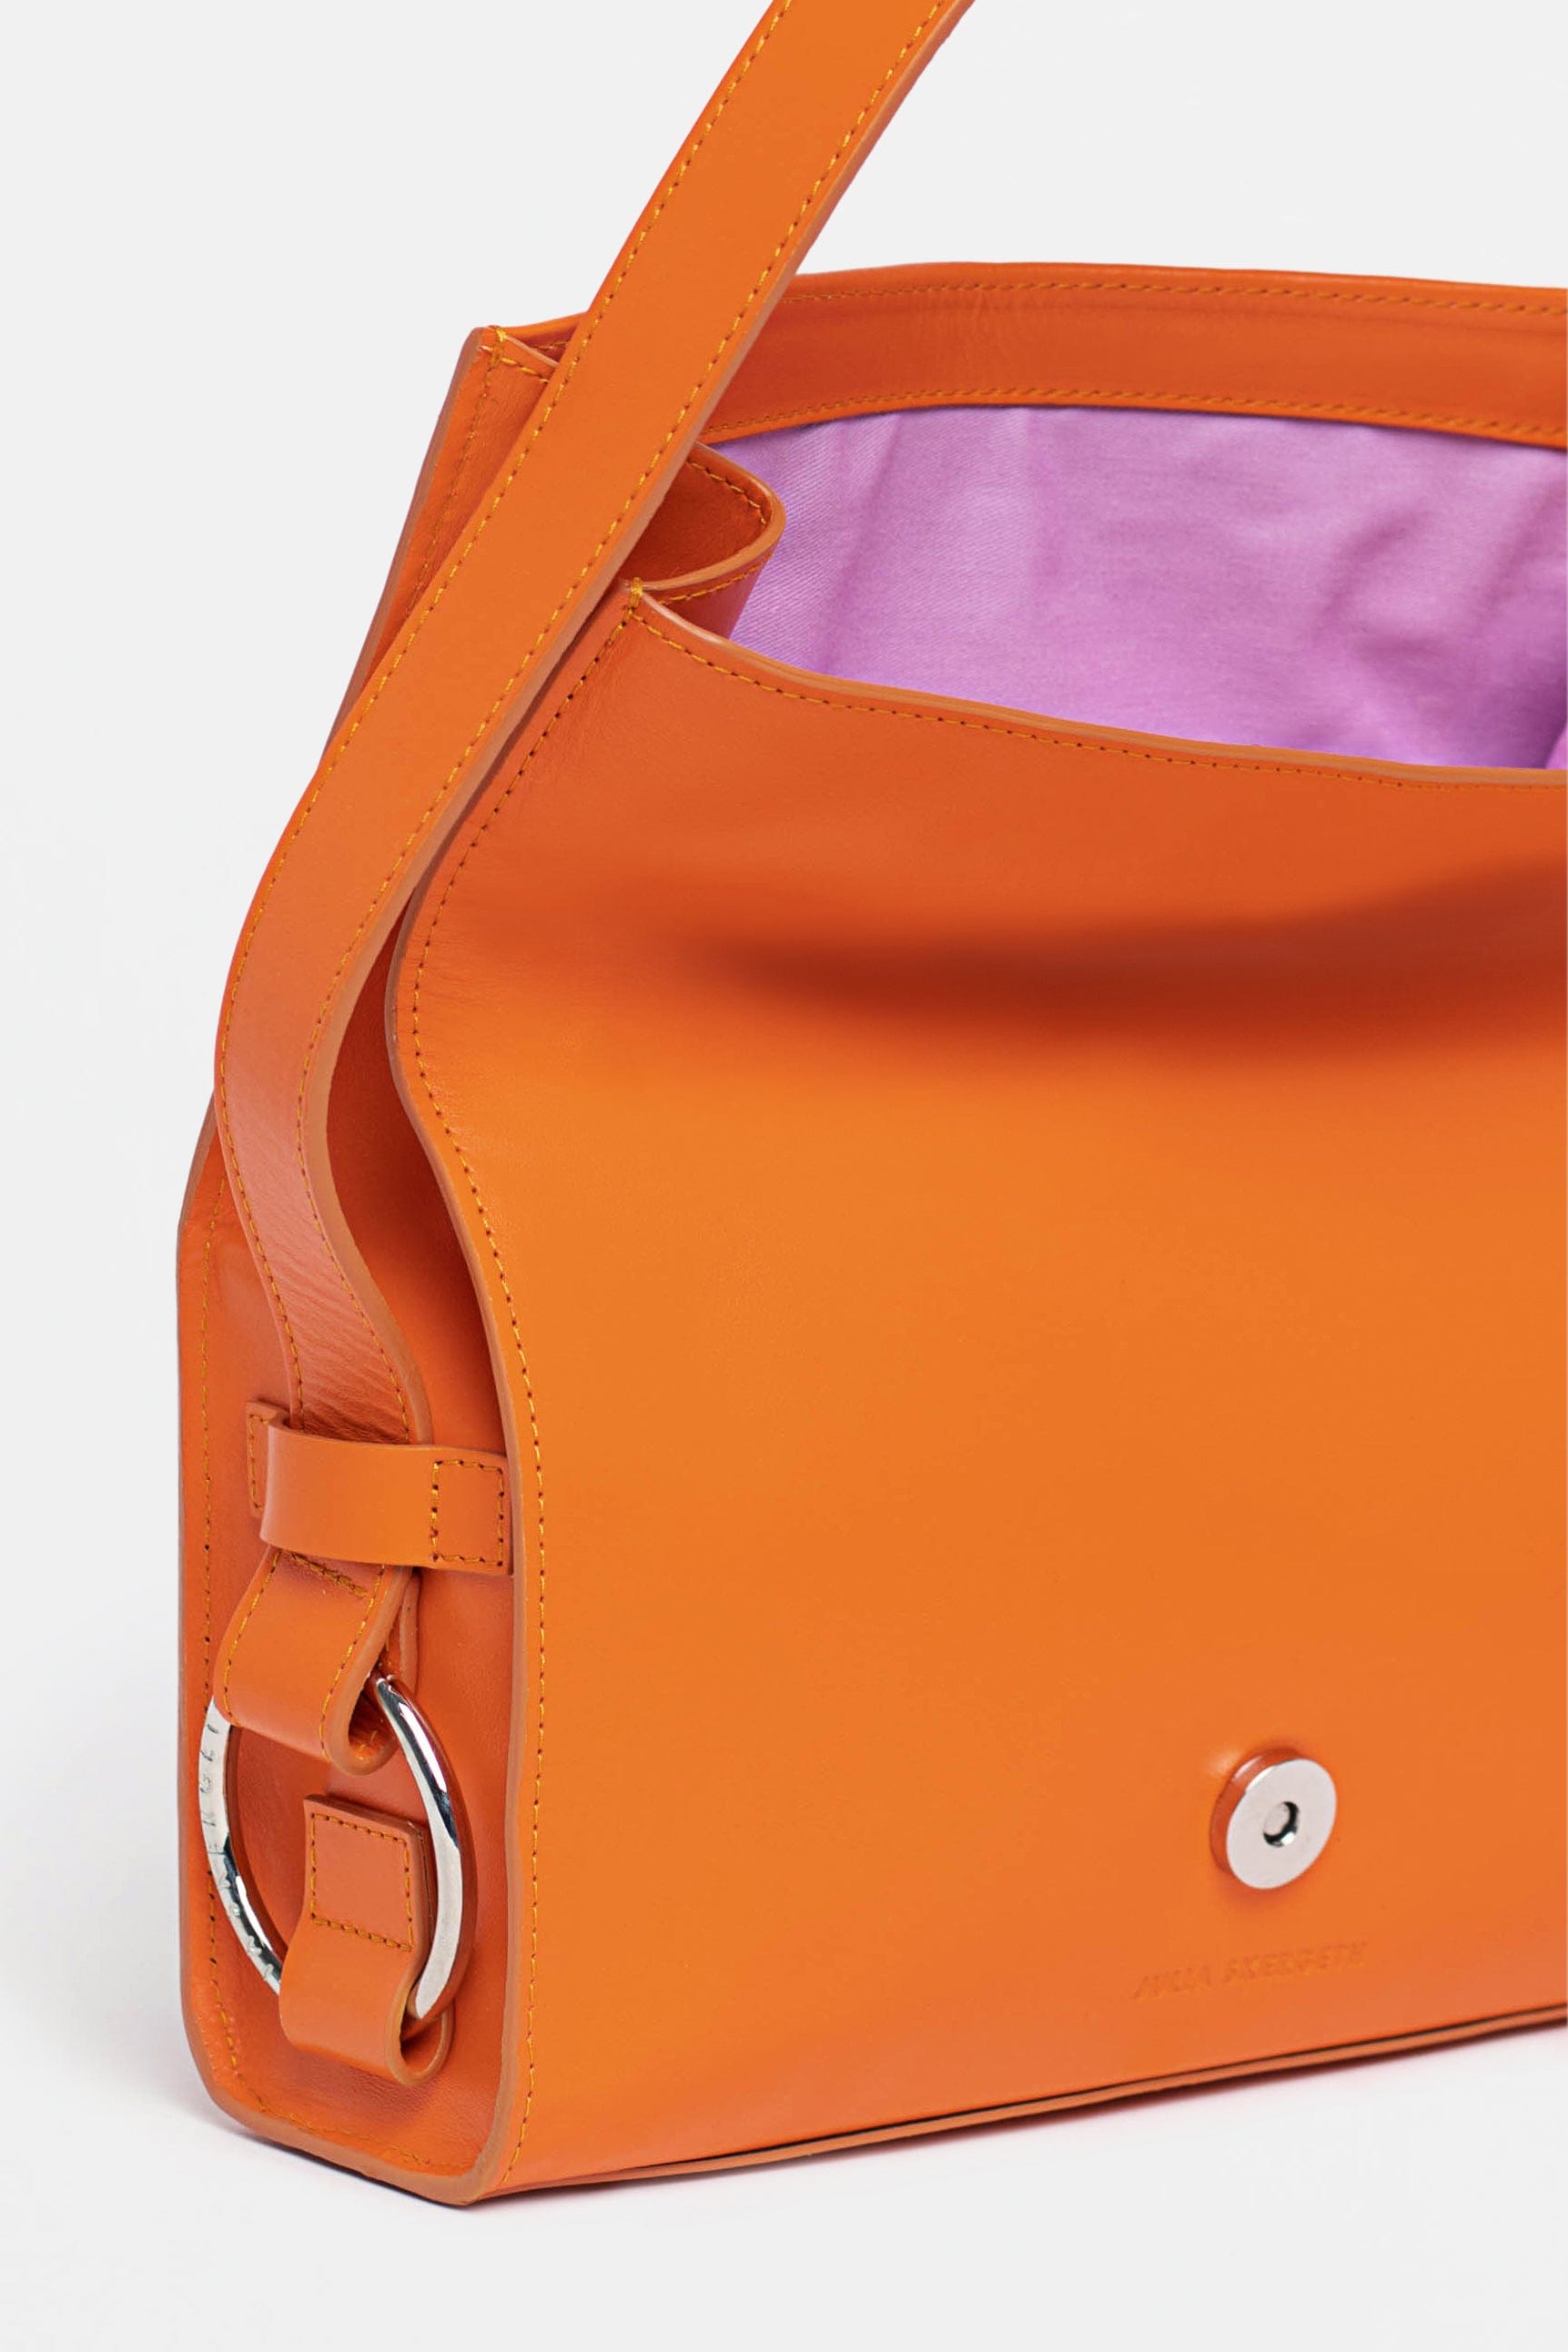 The SHOULDER BAG Orange - JULIA SKERGETH